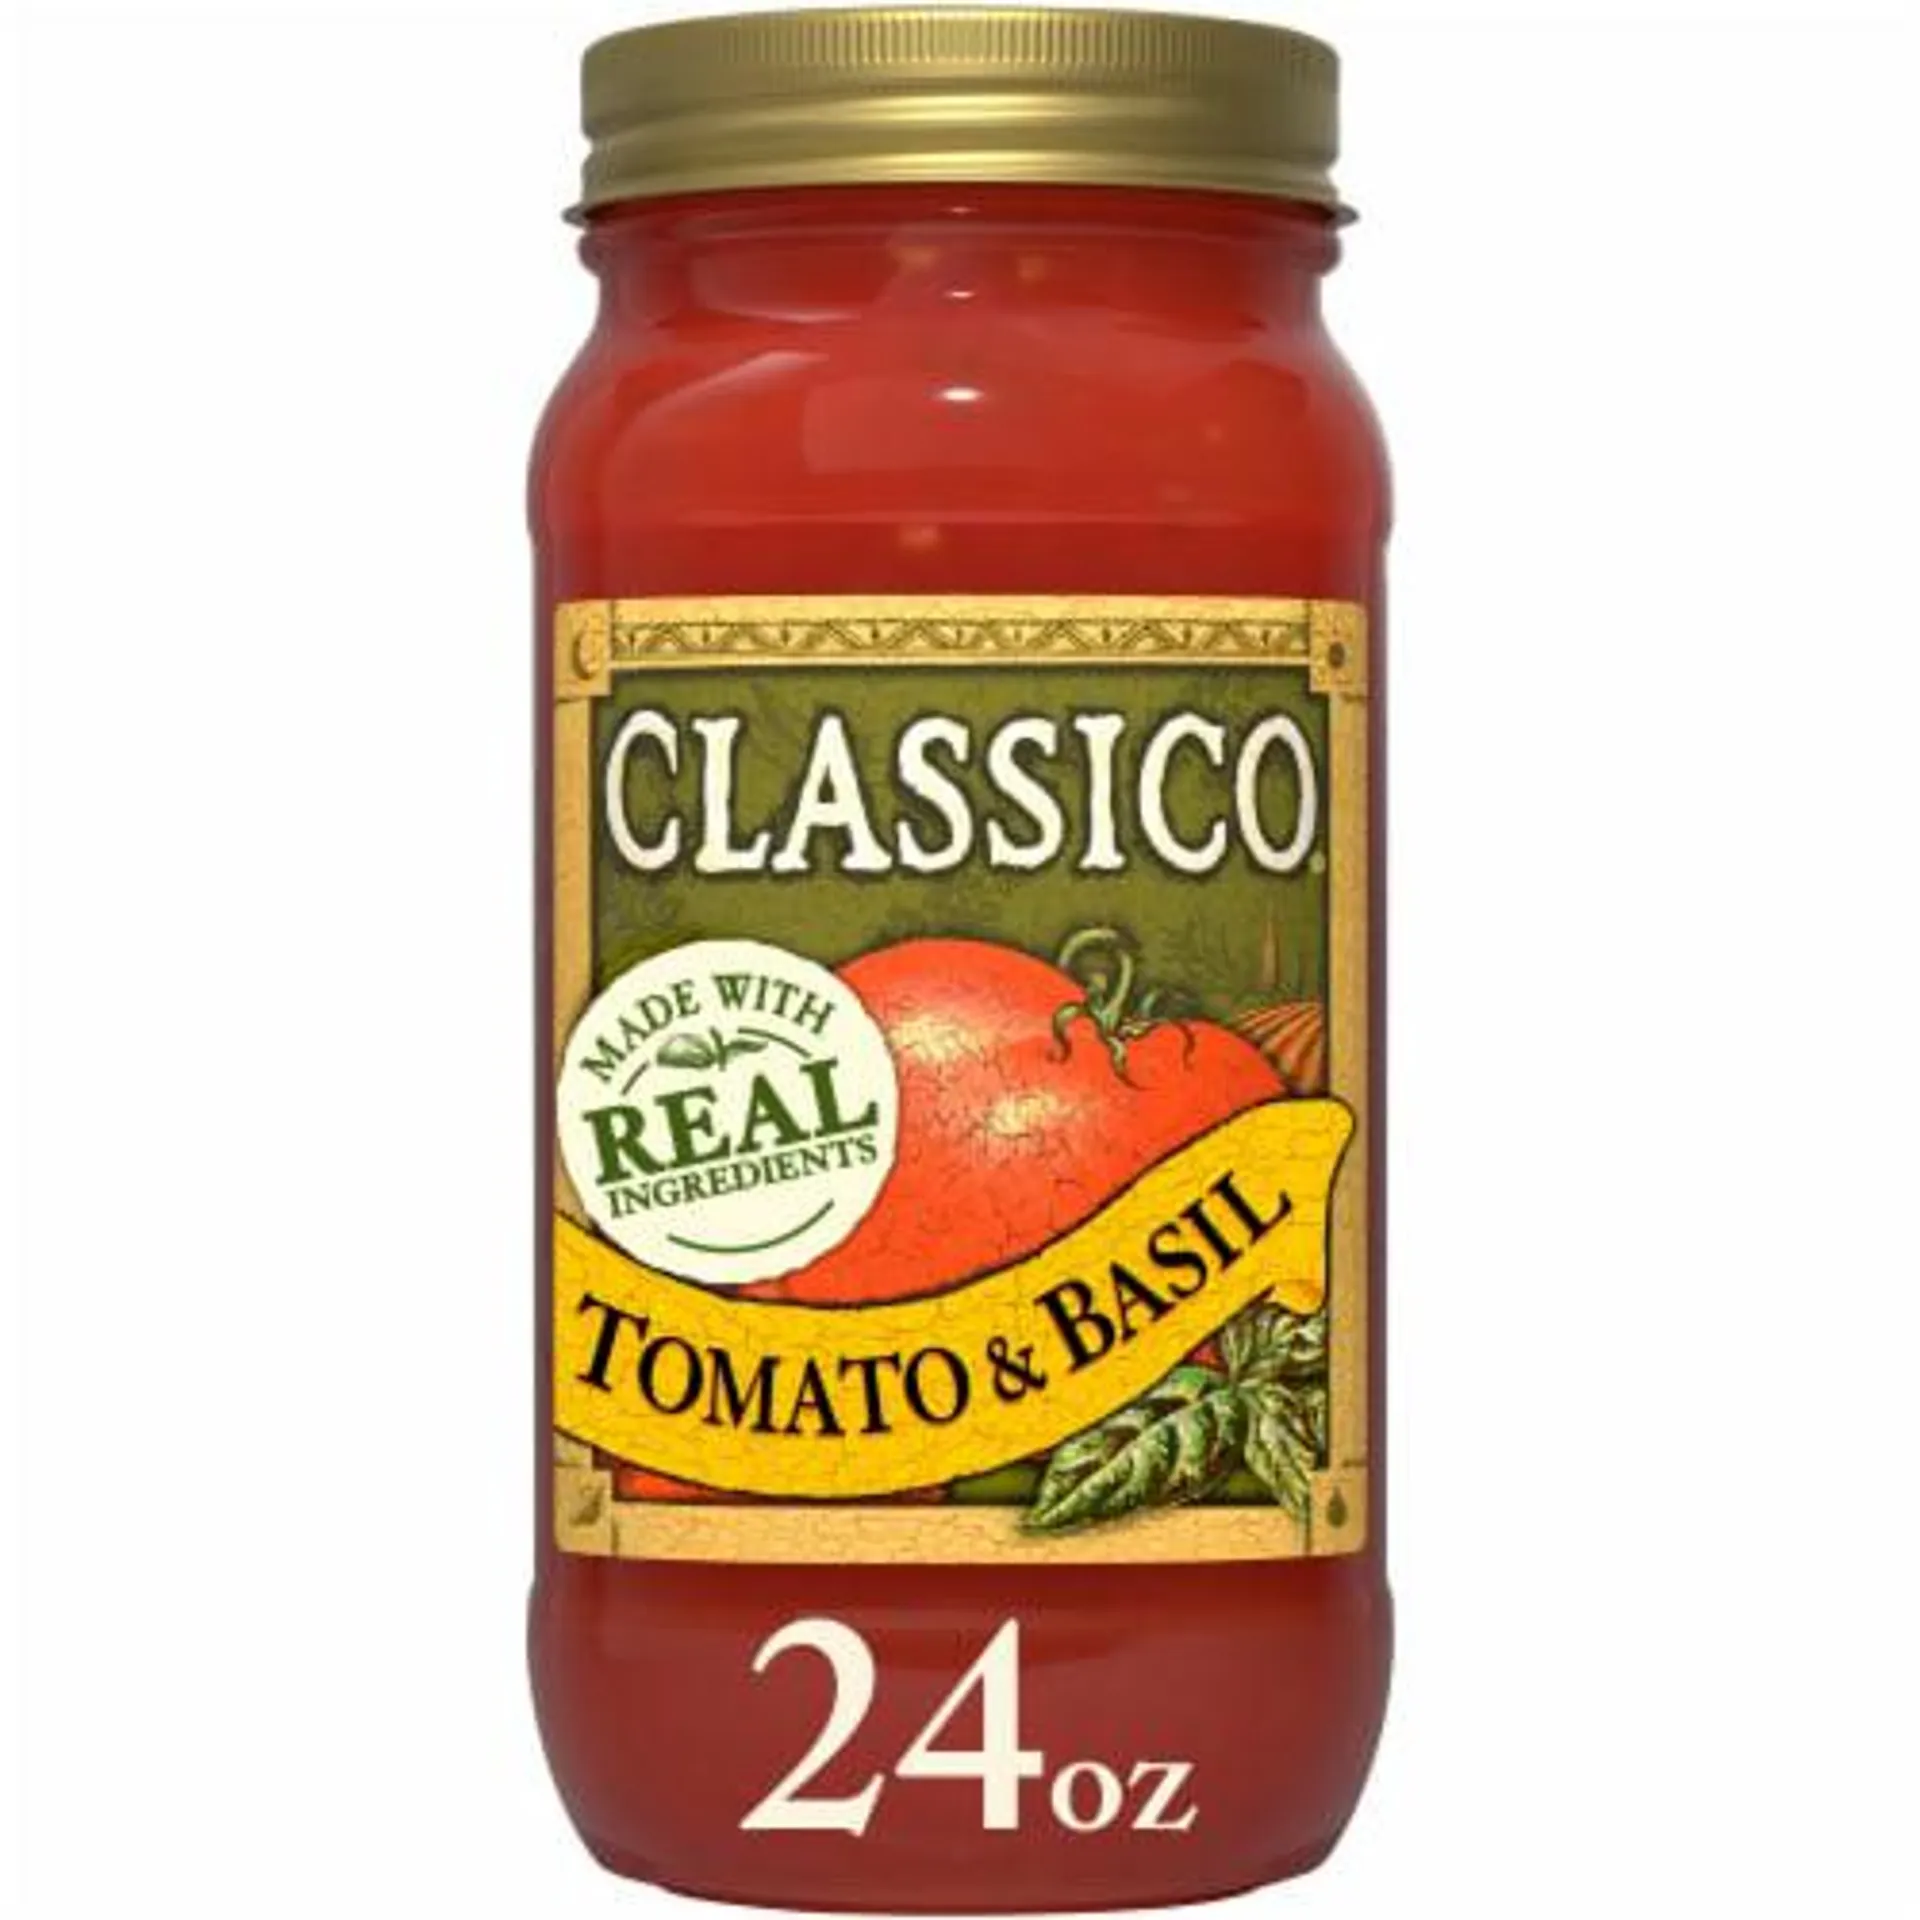 Classico Tomato & Basil Spaghetti Pasta Sauce